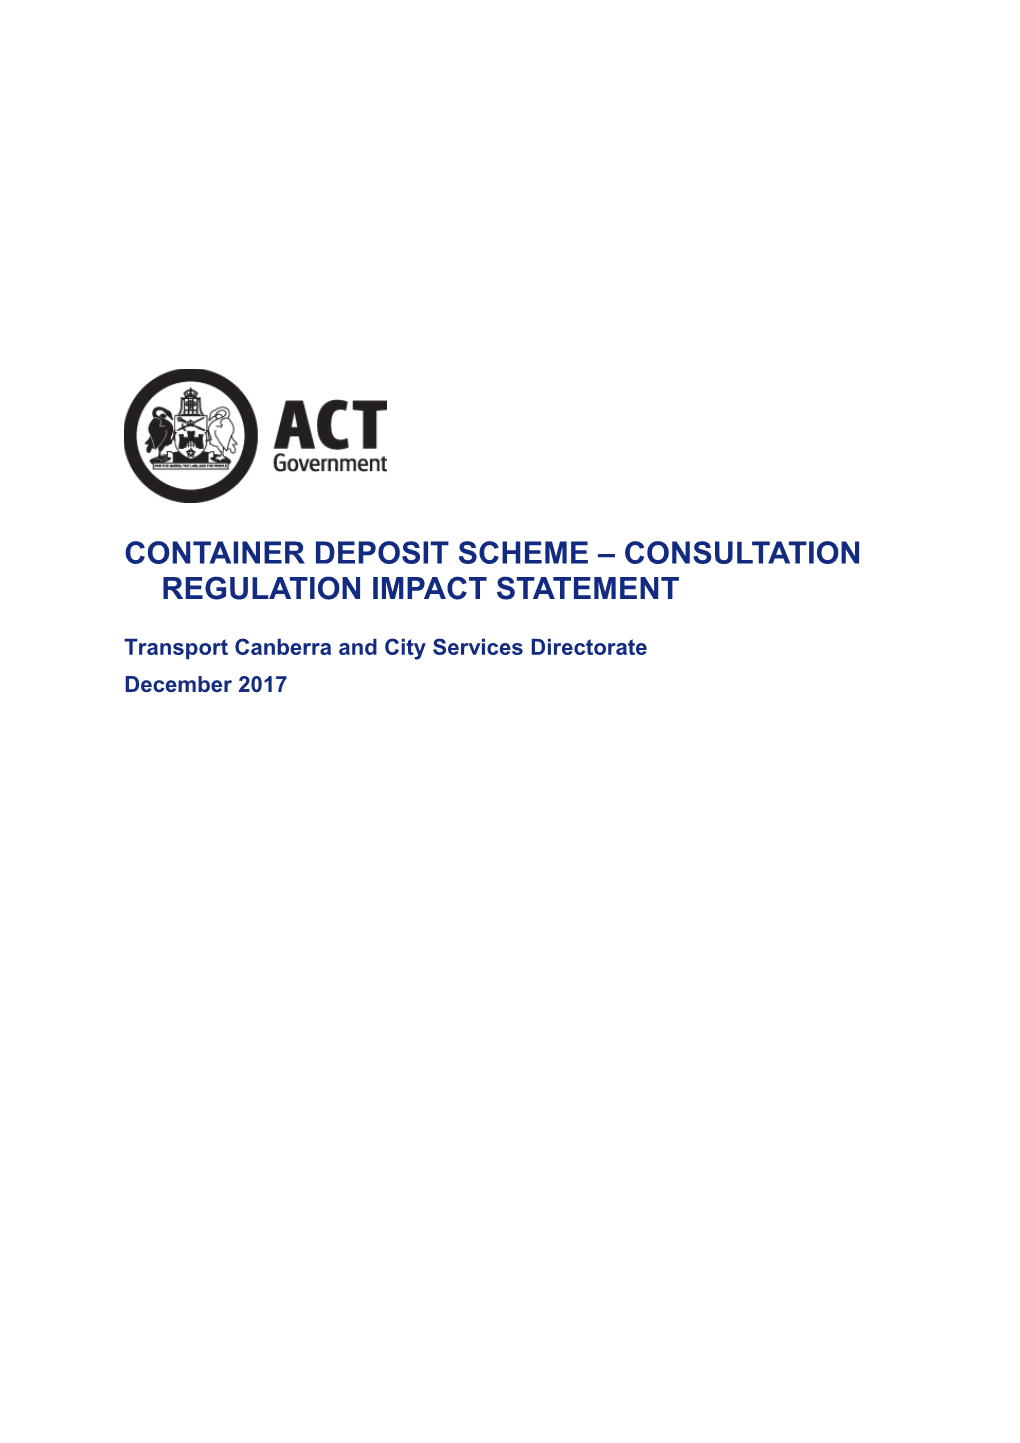 Container Deposit Scheme Consultation Regulation Impact Statement